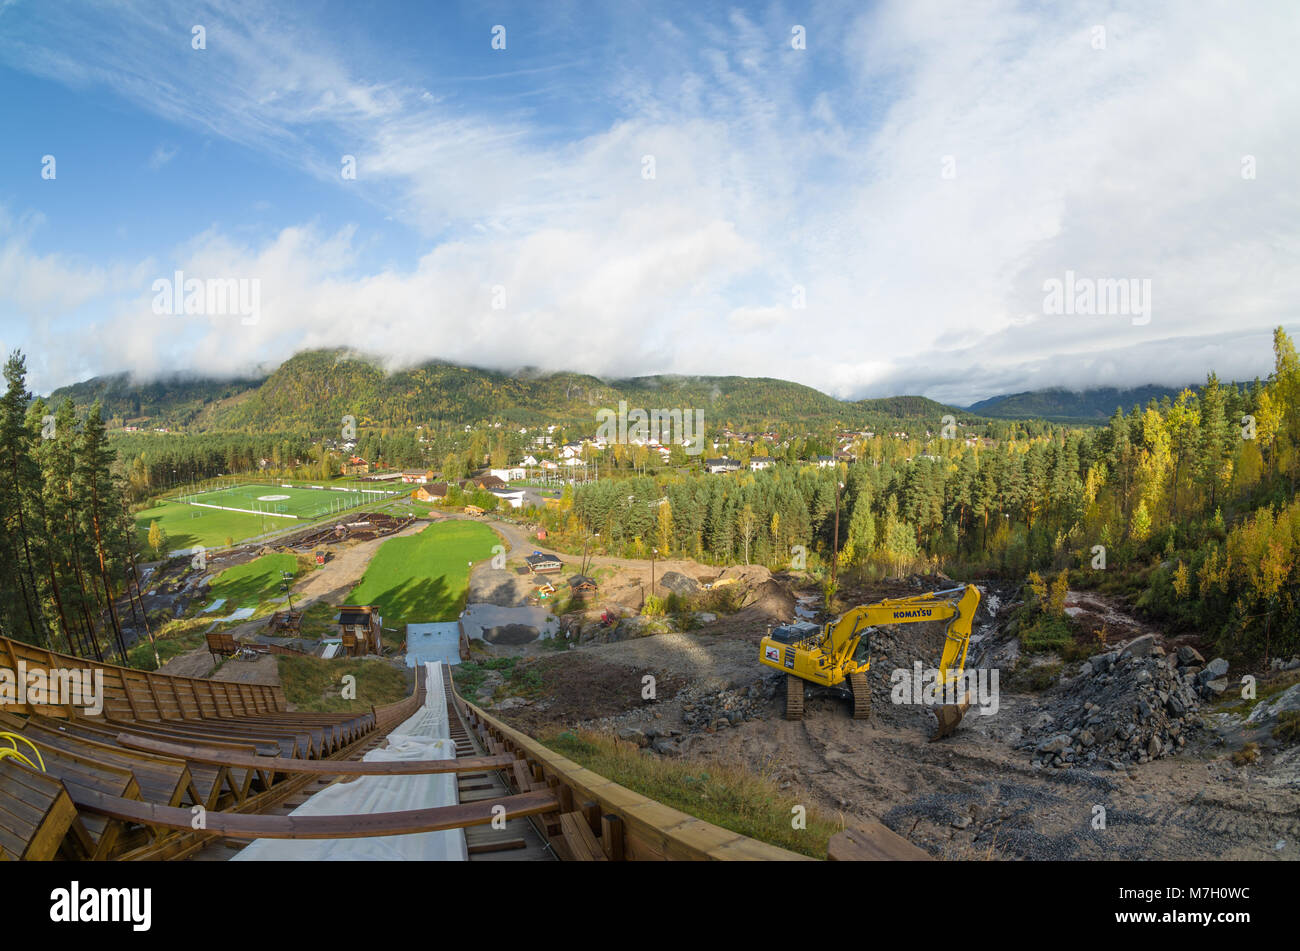 Ampia vista panoramica del fiume Otra valley in Evje, con sito di costruzione di nuova ski jumping hill in primo piano. Foto Stock